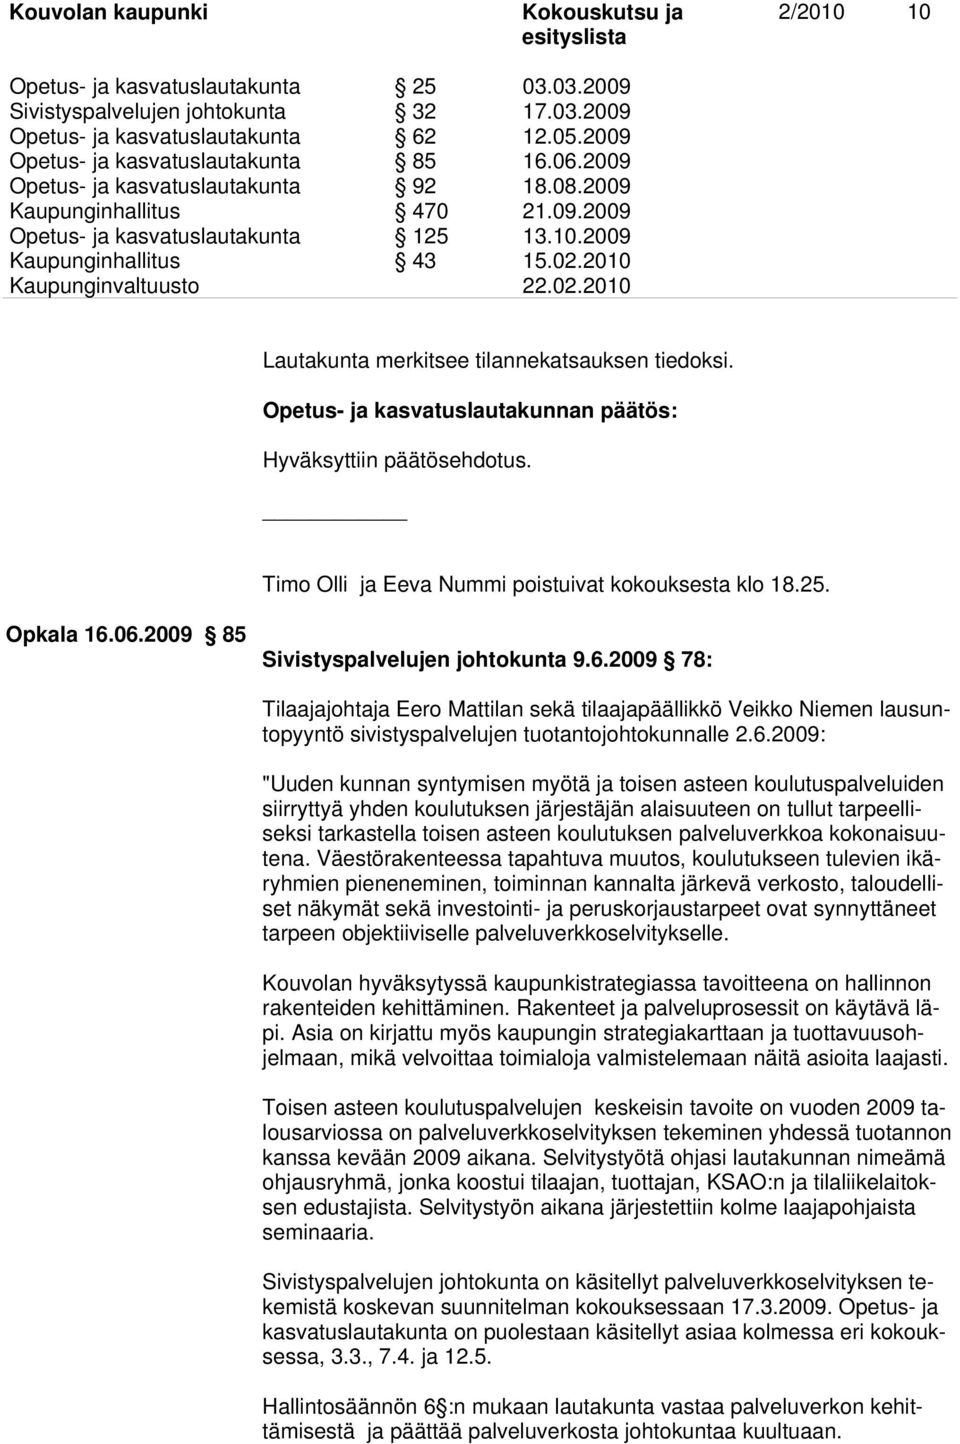 2010 Lautakunta merkitsee tilannekatsauksen tiedoksi. Opetus- ja kasvatuslautakunnan päätös: Hyväksyttiin päätösehdotus. Timo Olli ja Eeva Nummi poistuivat kokouksesta klo 18.25. Opkala 16.06.